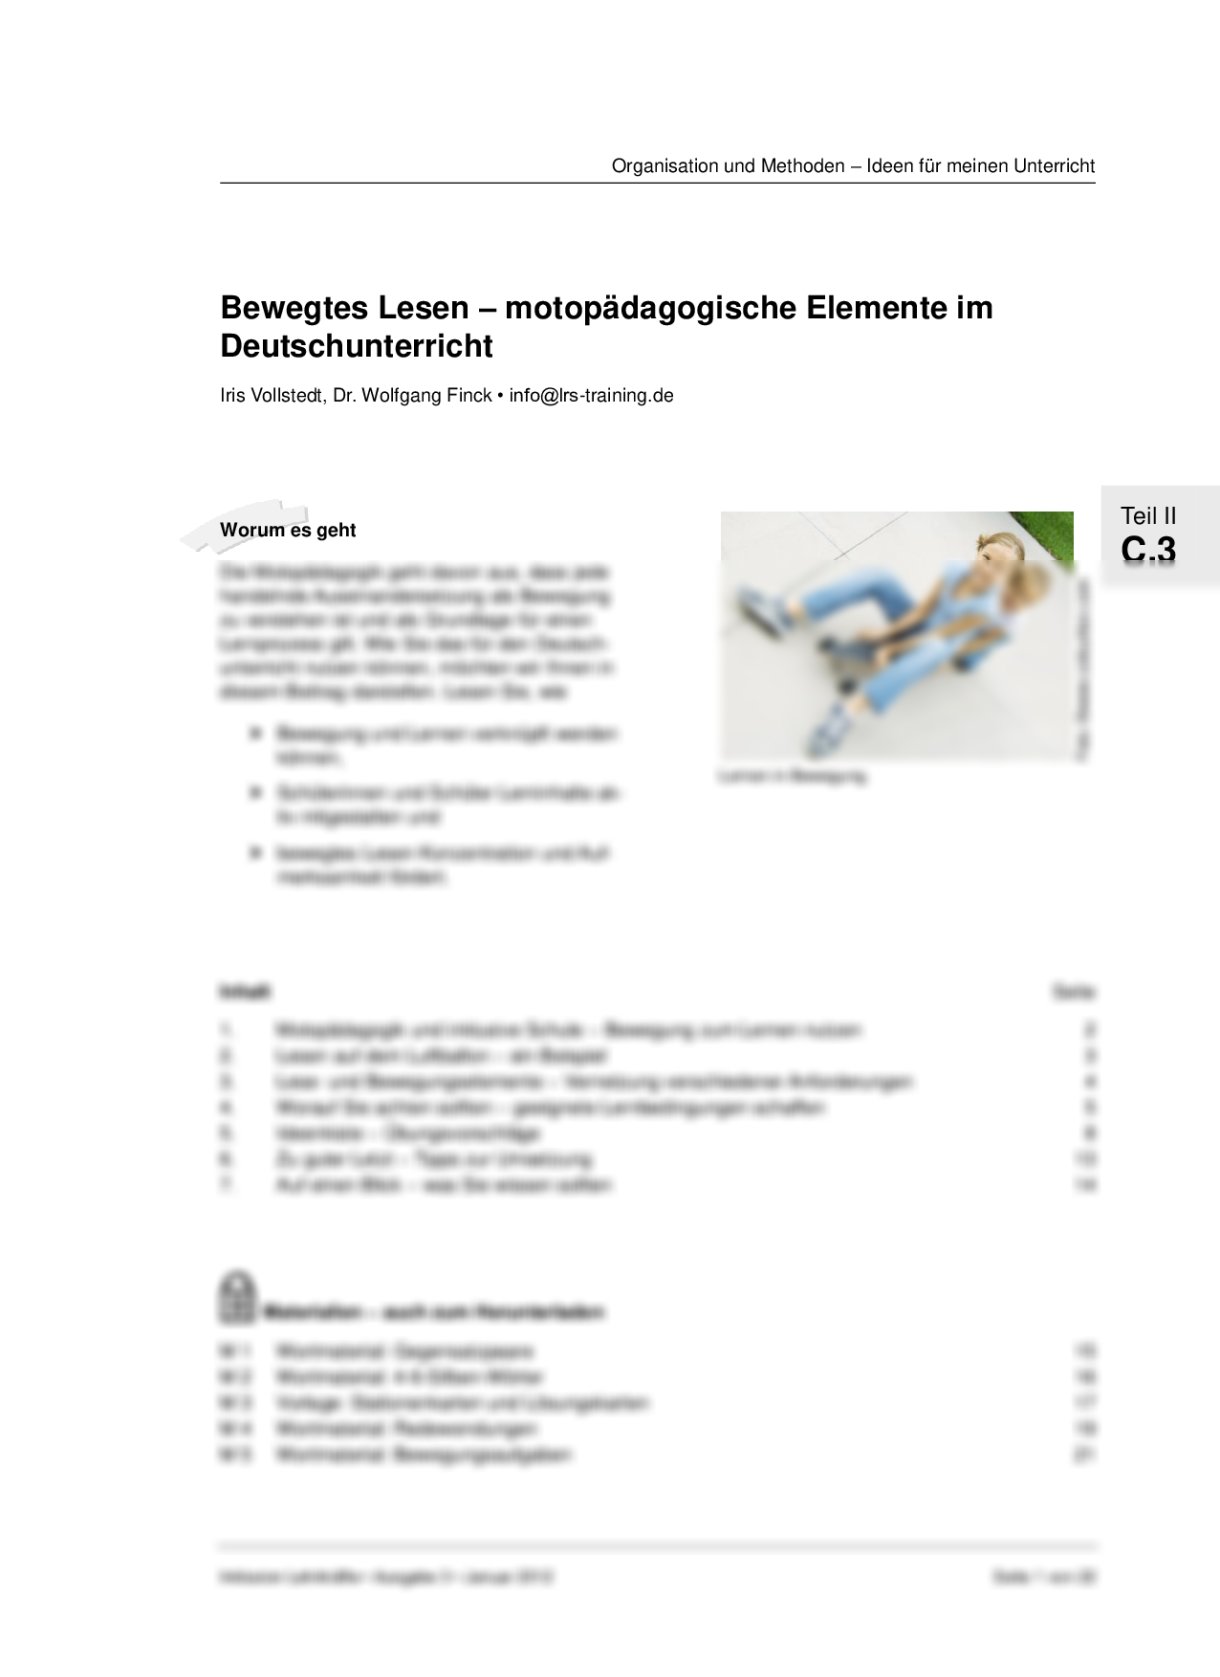 Motopädagogische Elemente im Deutschunterricht - Seite 1